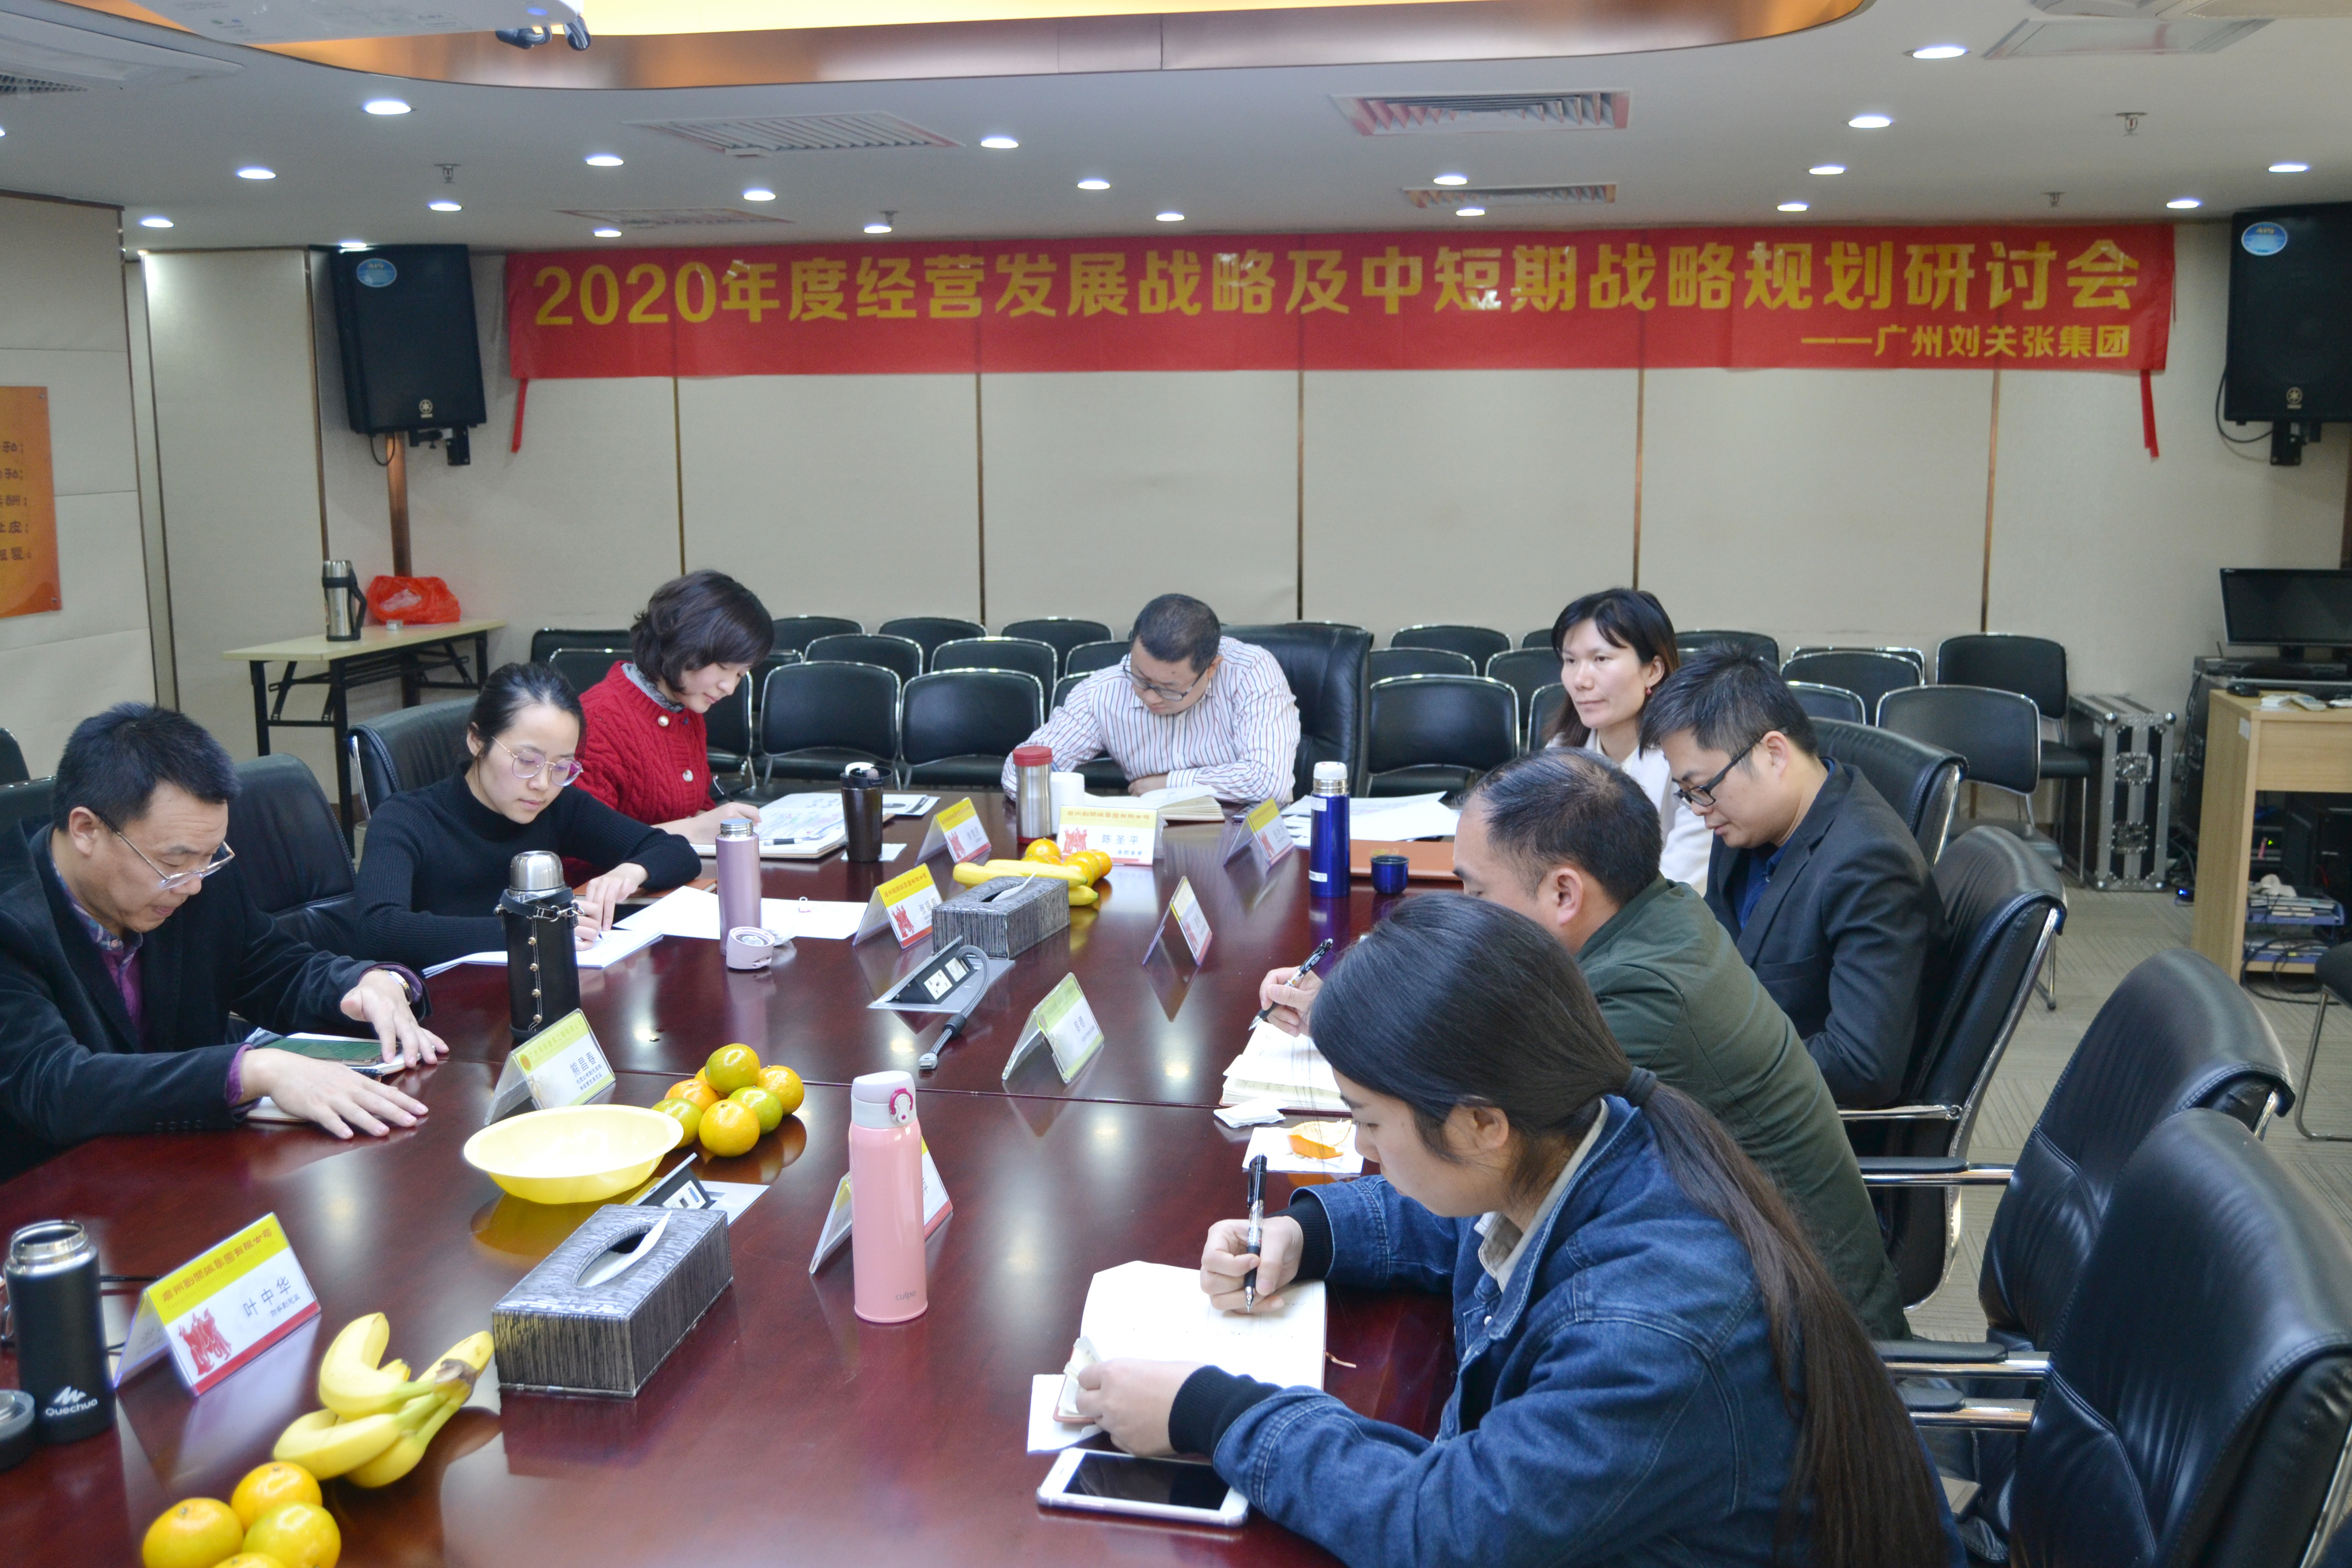 劉關張集團2020年經營發展戰略及中短期戰略規劃